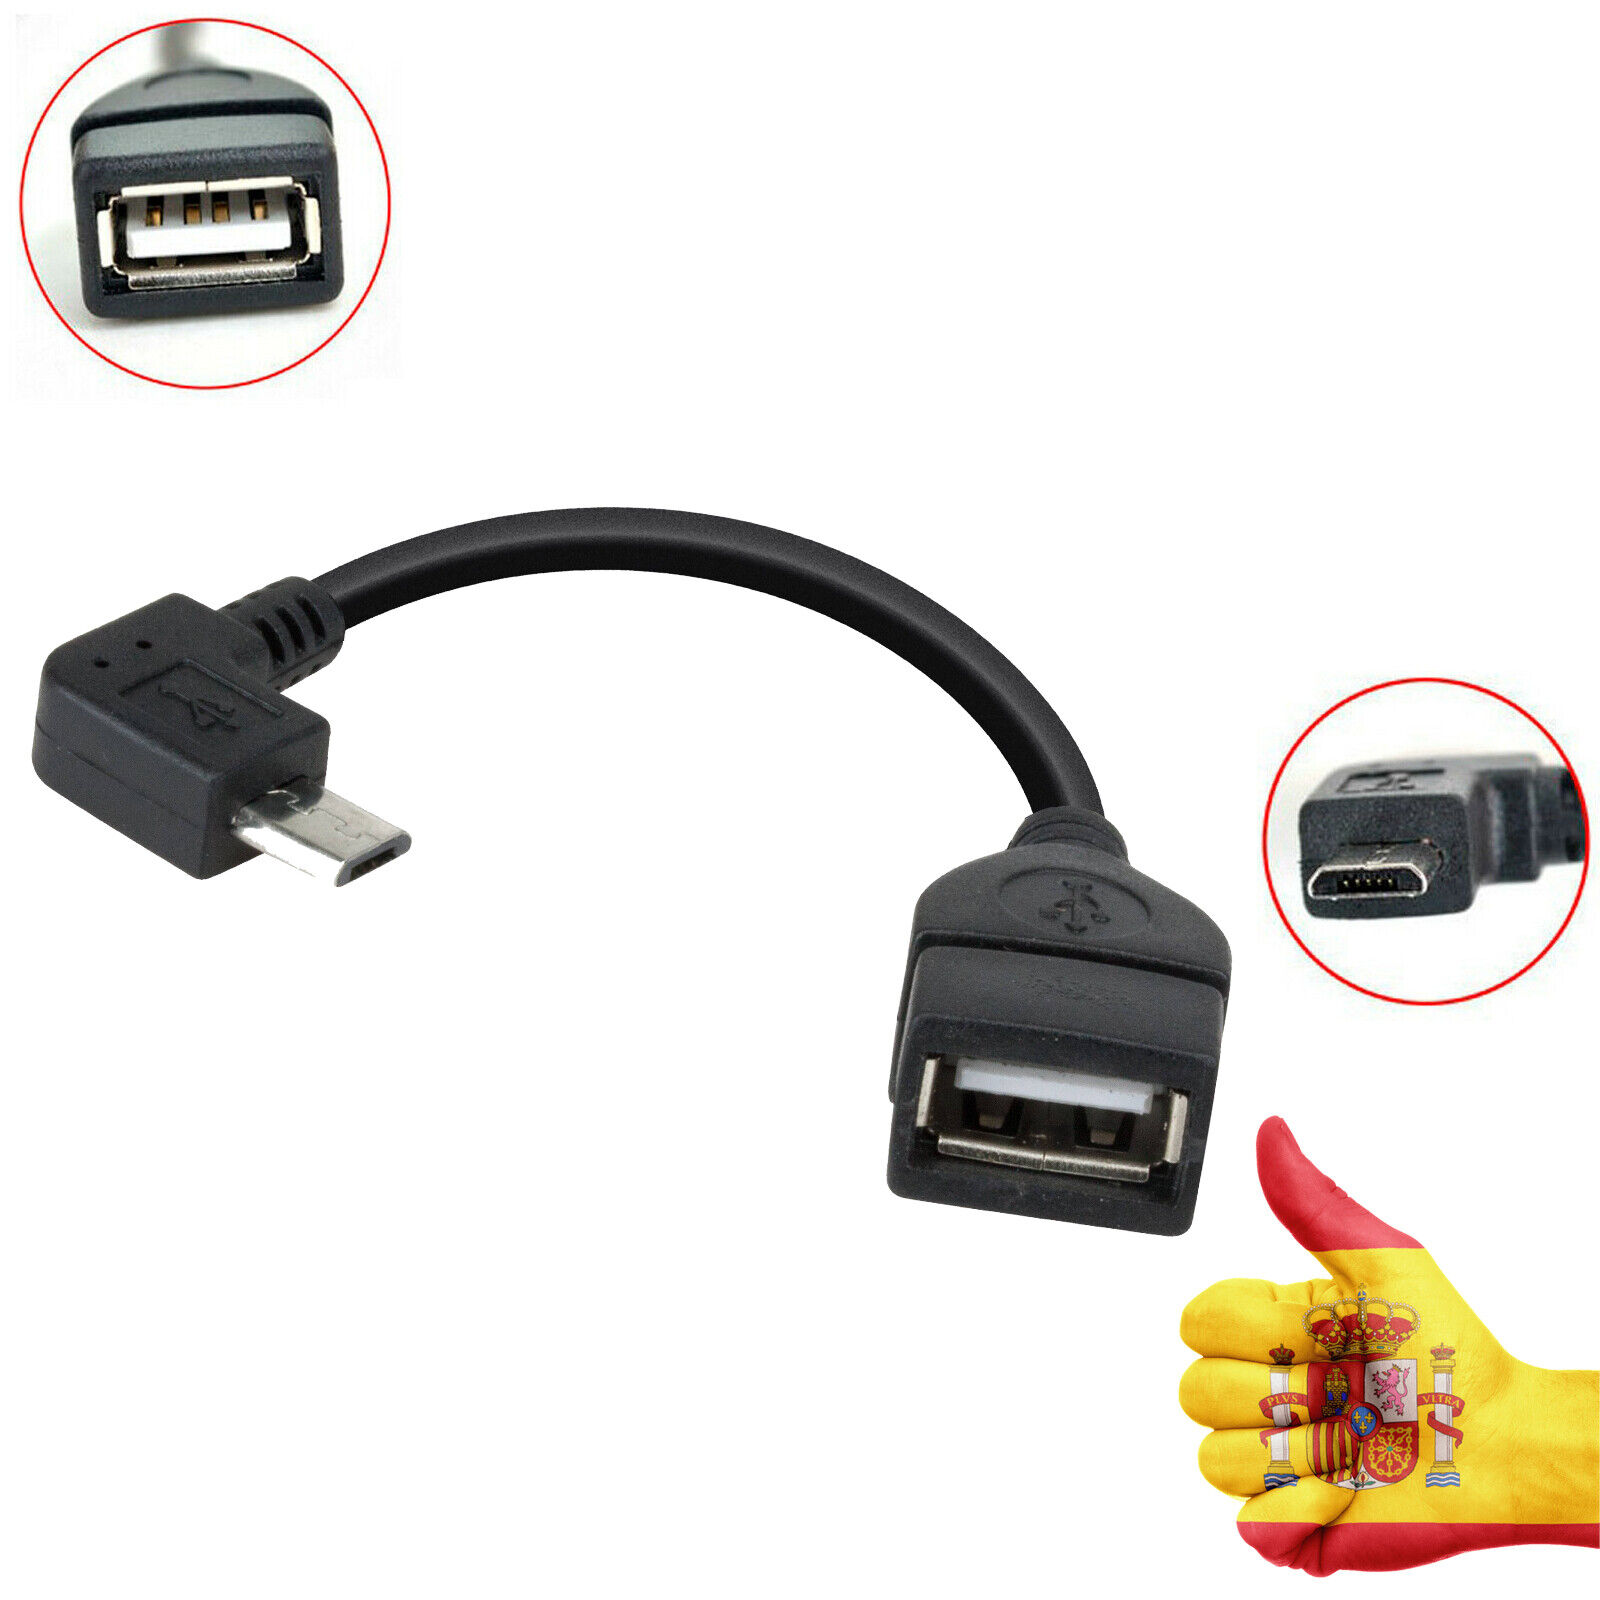 ADAPTADOR MICROUSB A USB OTG (ON THE GO) PARA SAMSUNG GALAXY 10.1...